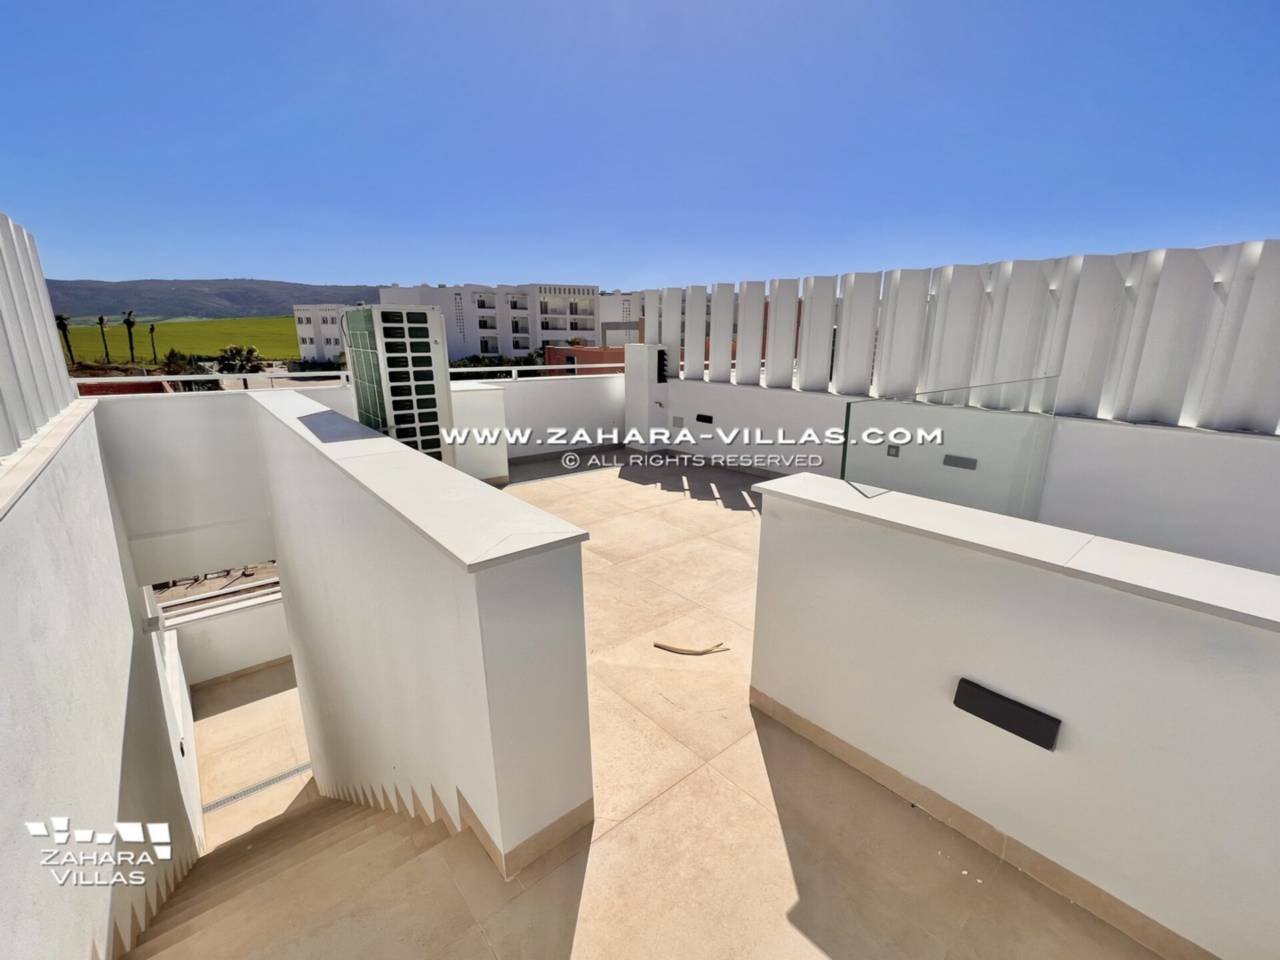 Imagen 45 de Promoción obra nueva terminada "EL OASIS DE ZAHARA" viviendas adosadas junto al mar